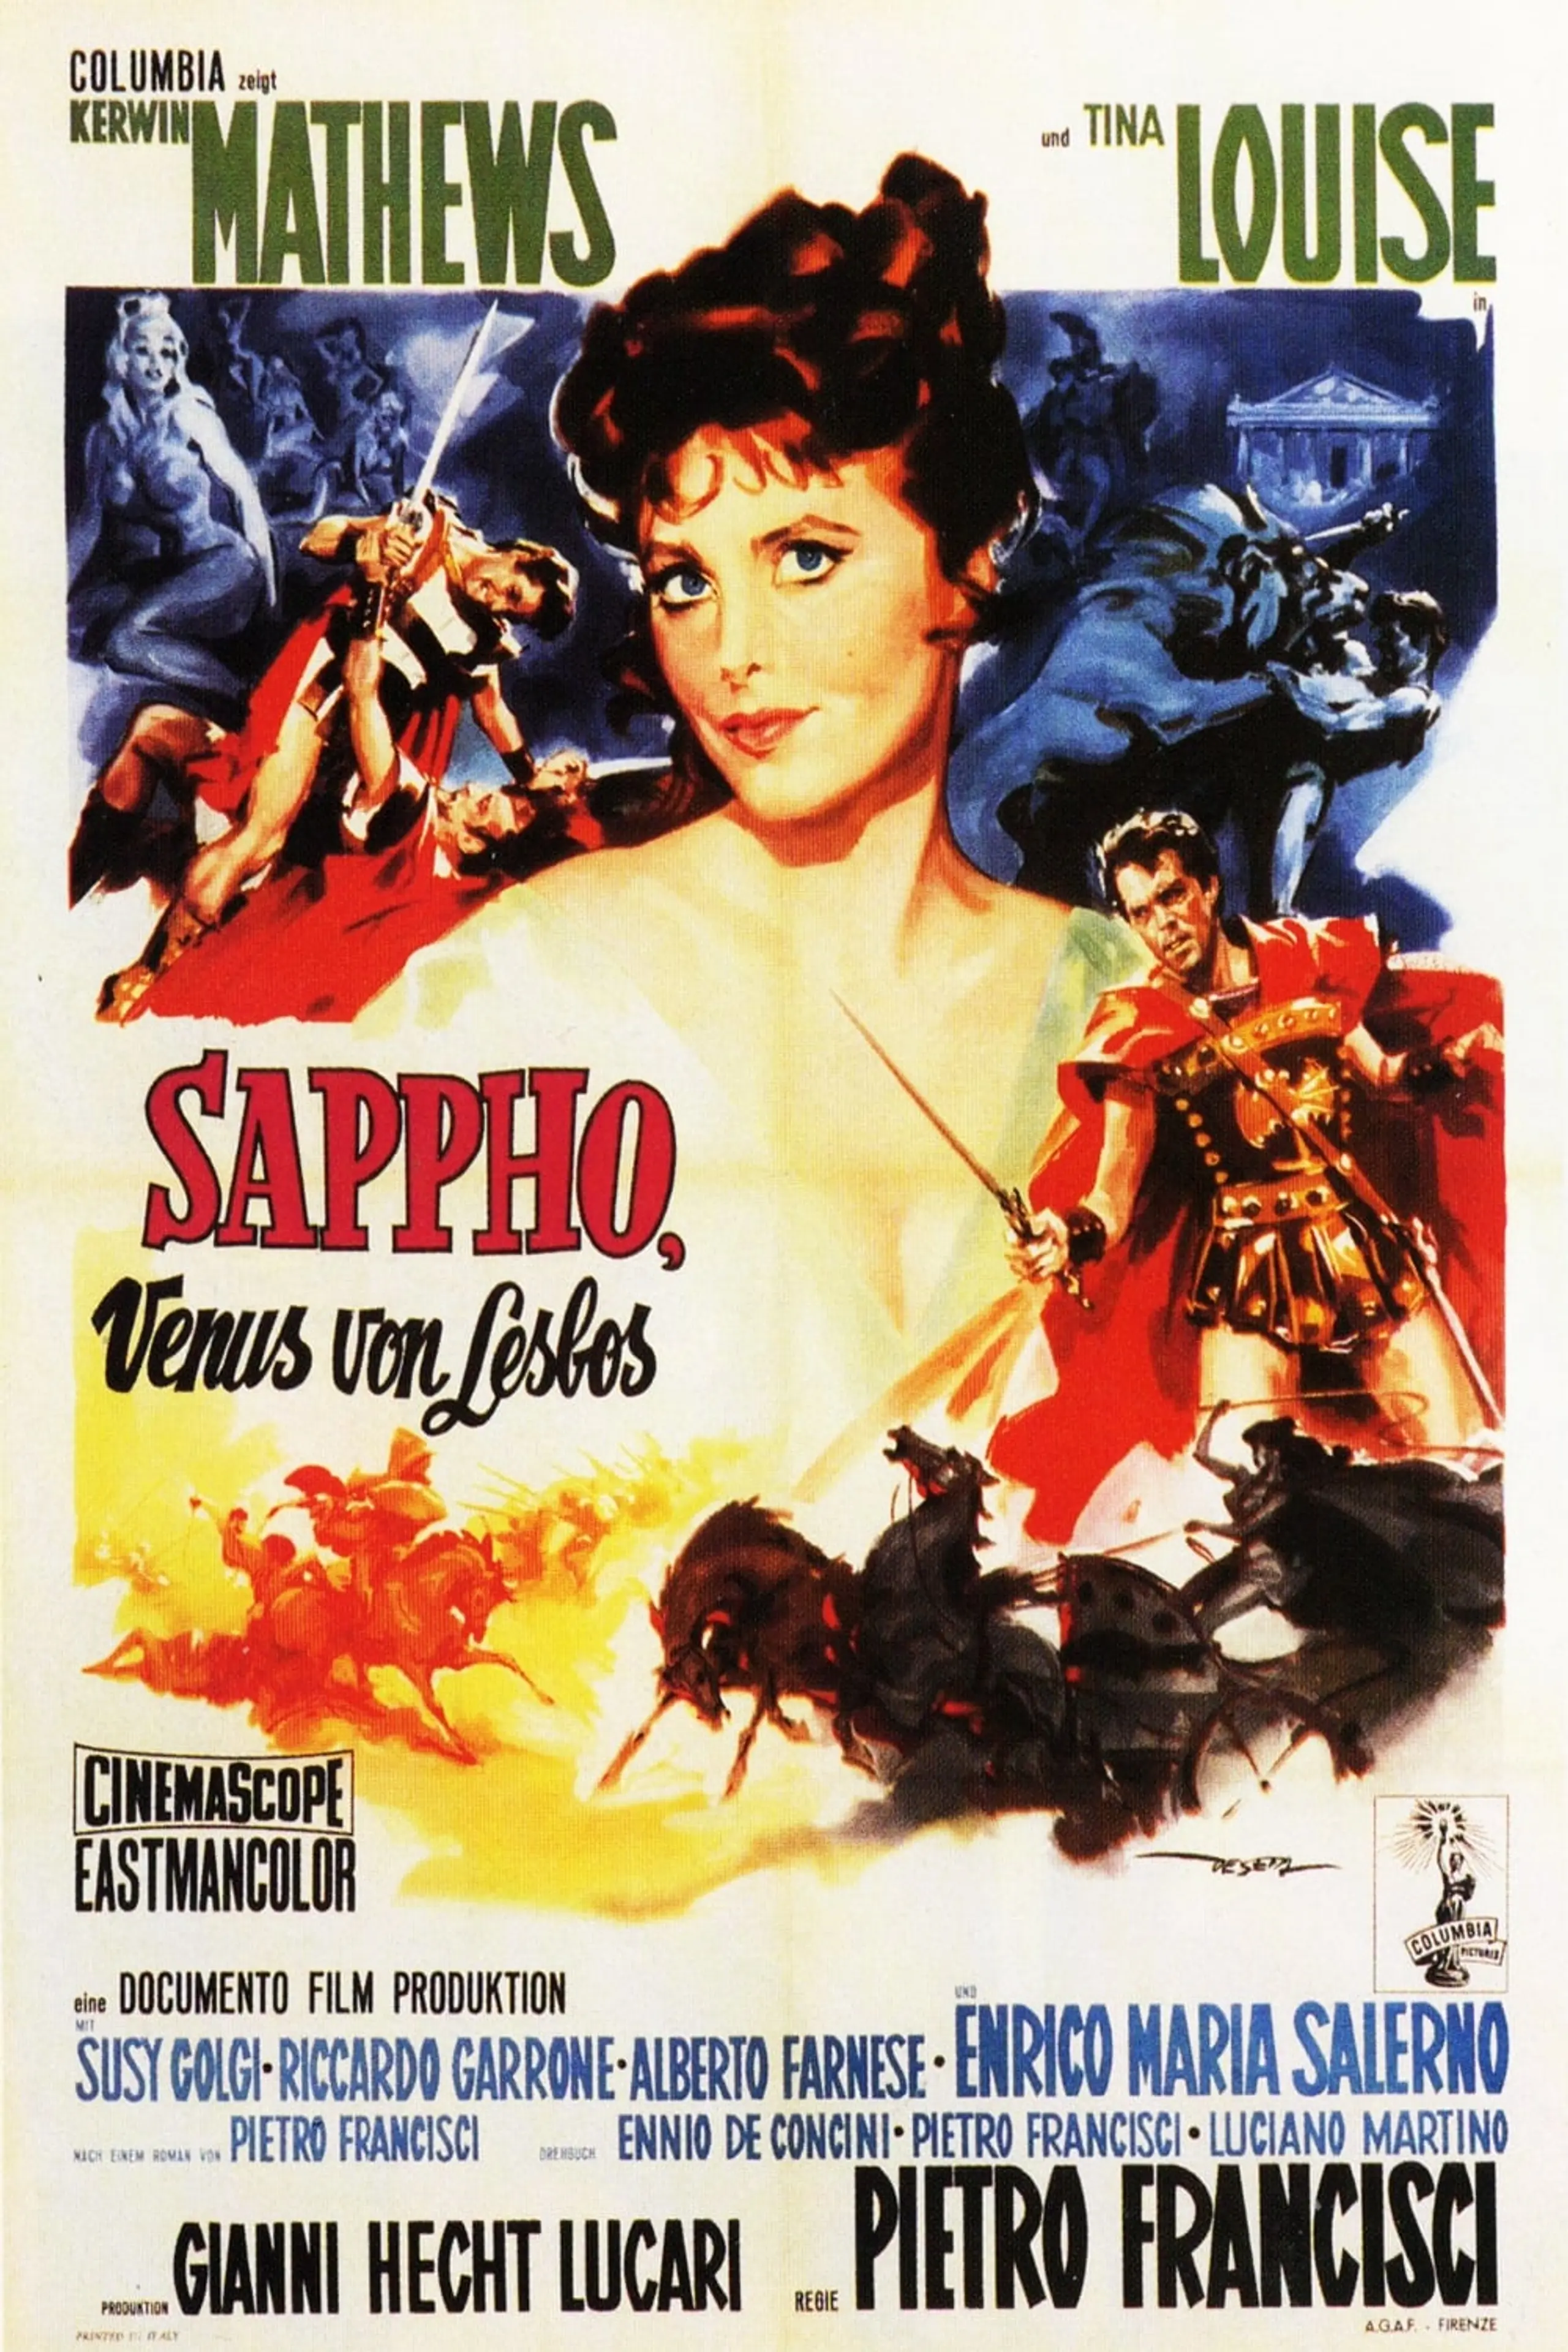 Sappho, Venus von Lesbos